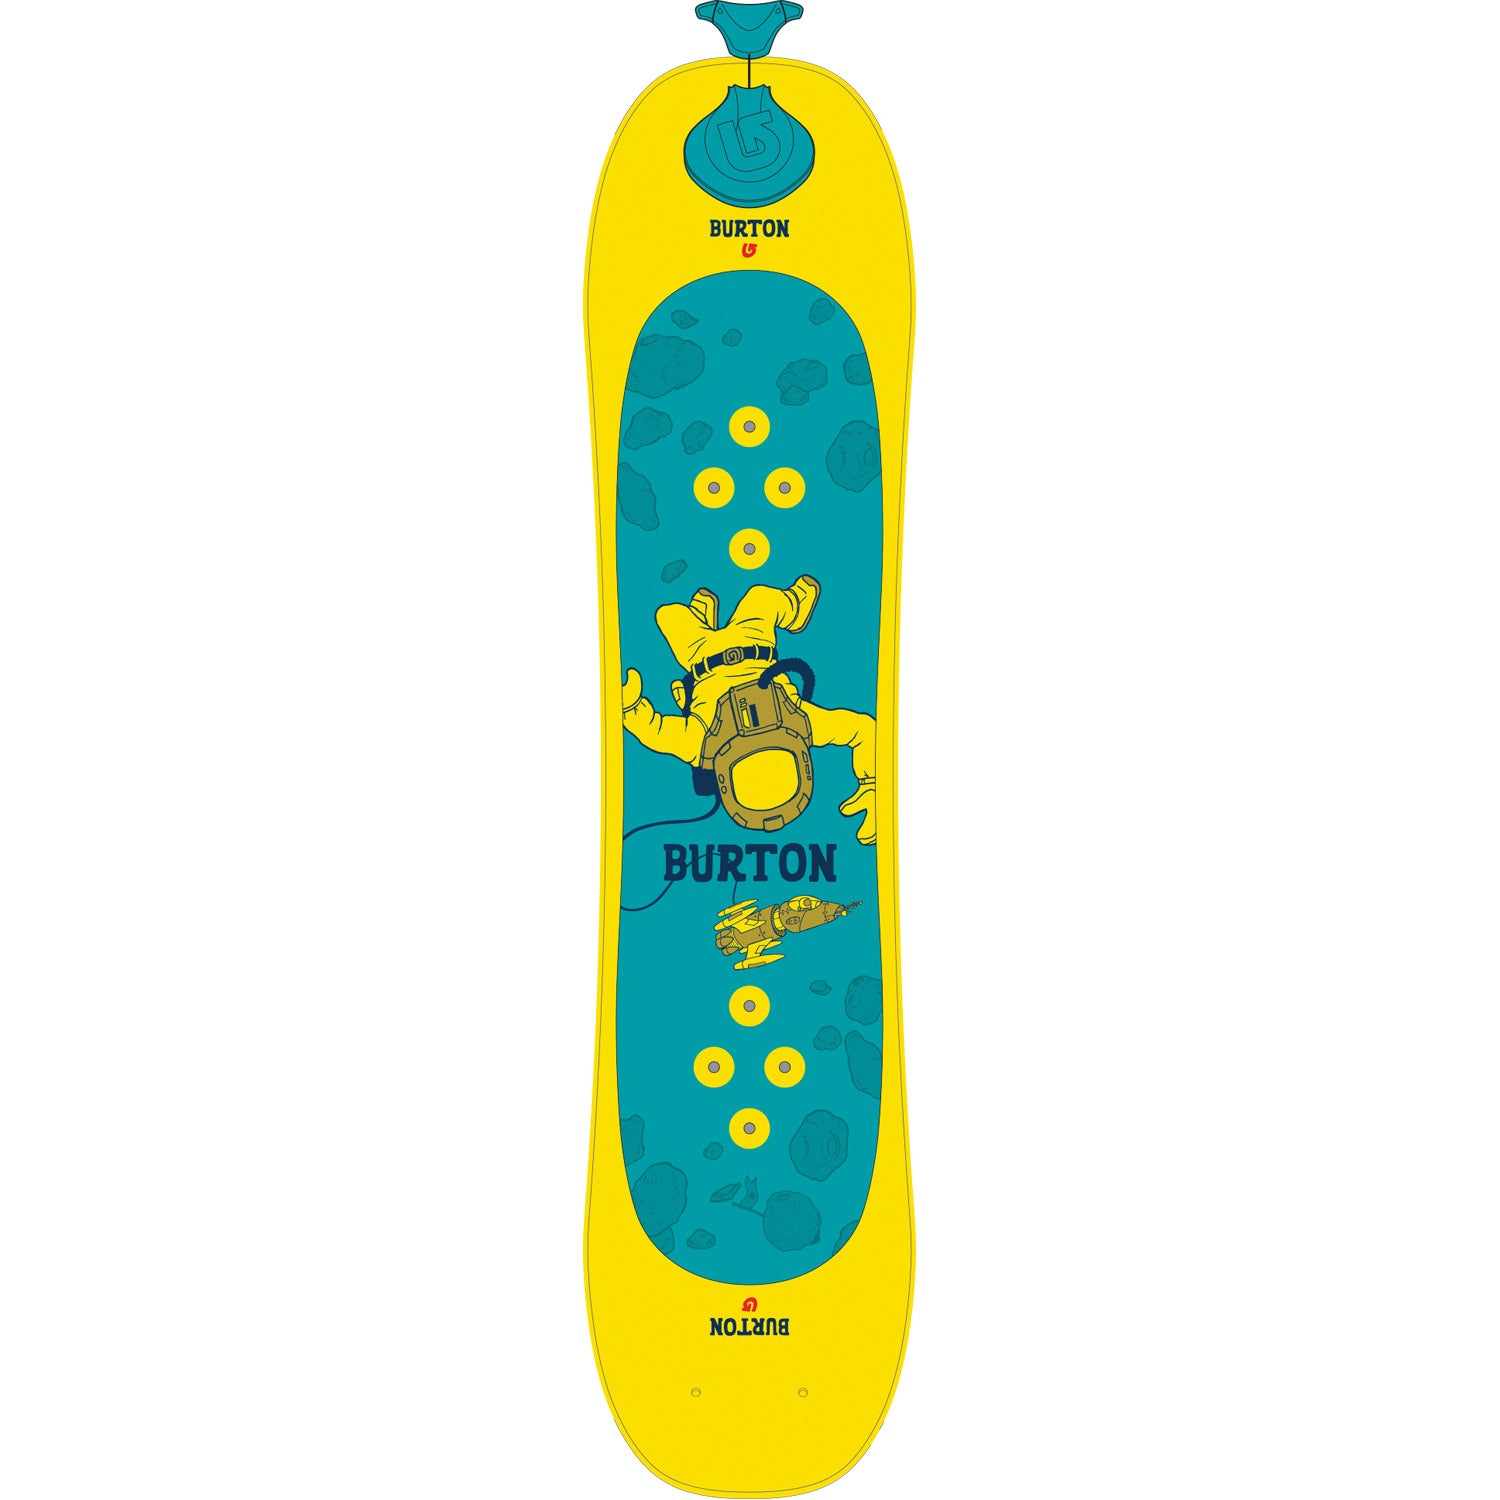 Kids' Riglet Snowboard